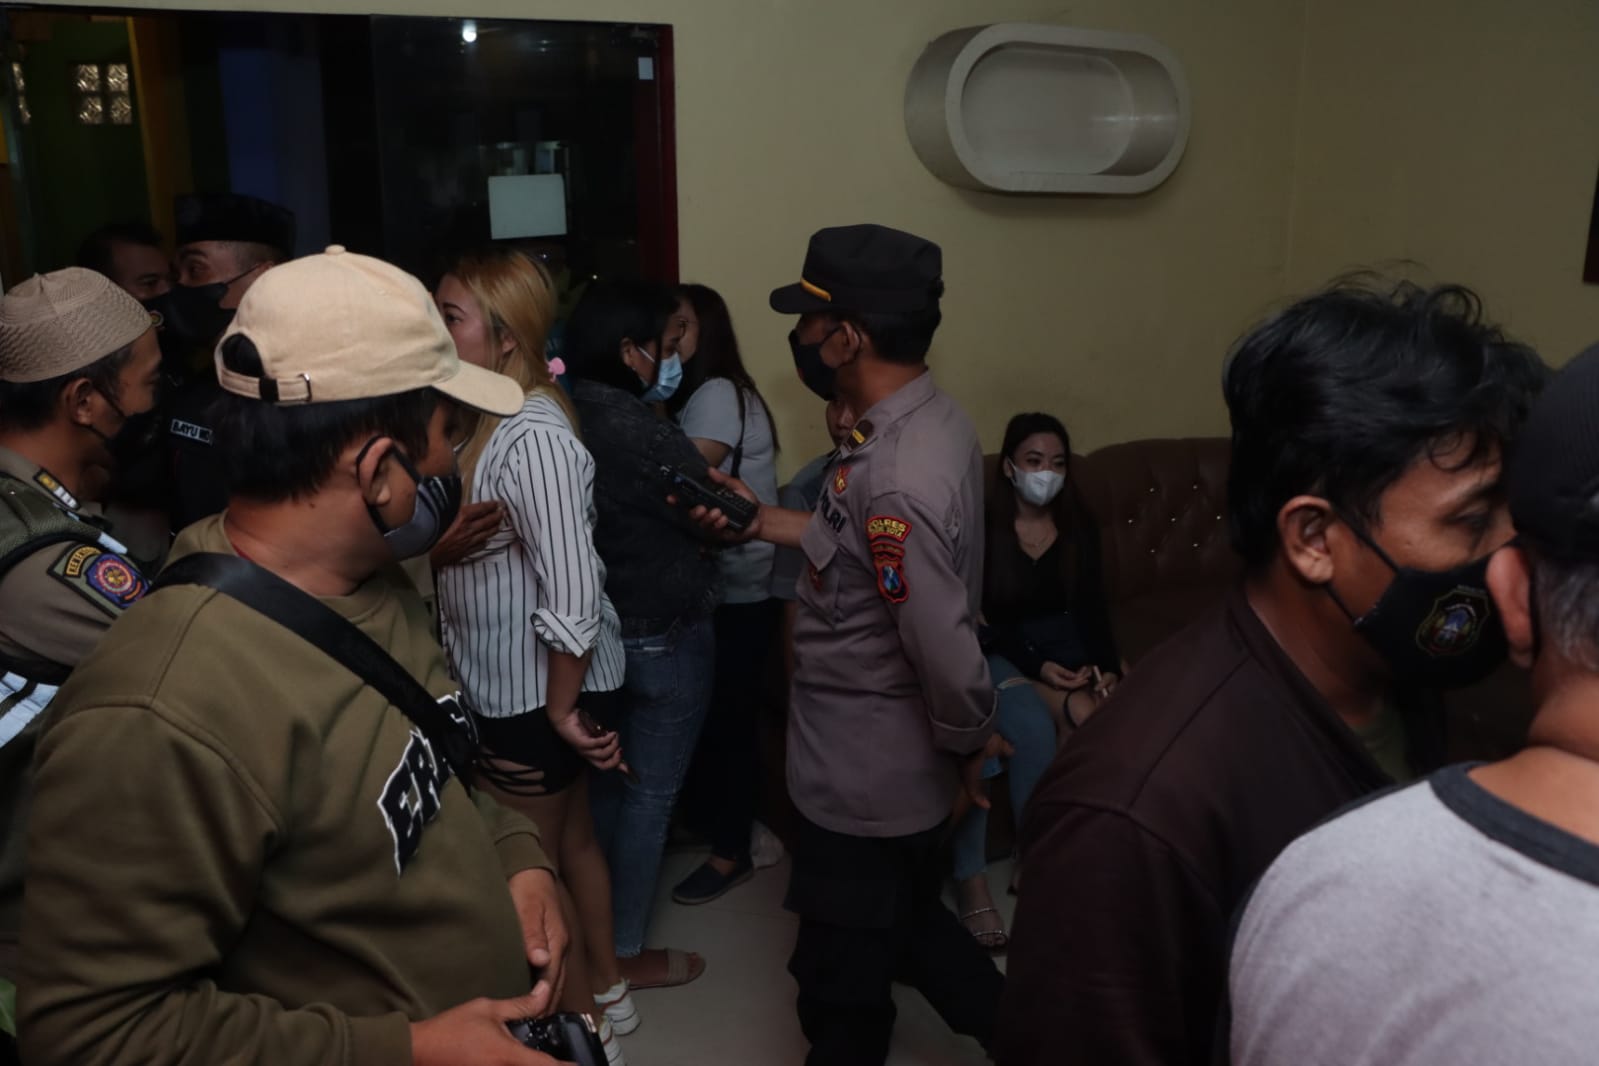 Buka Sembunyi-sembunyi di Bulan Ramadan, Dua Karaoke di Blitar Digrebek Polisi